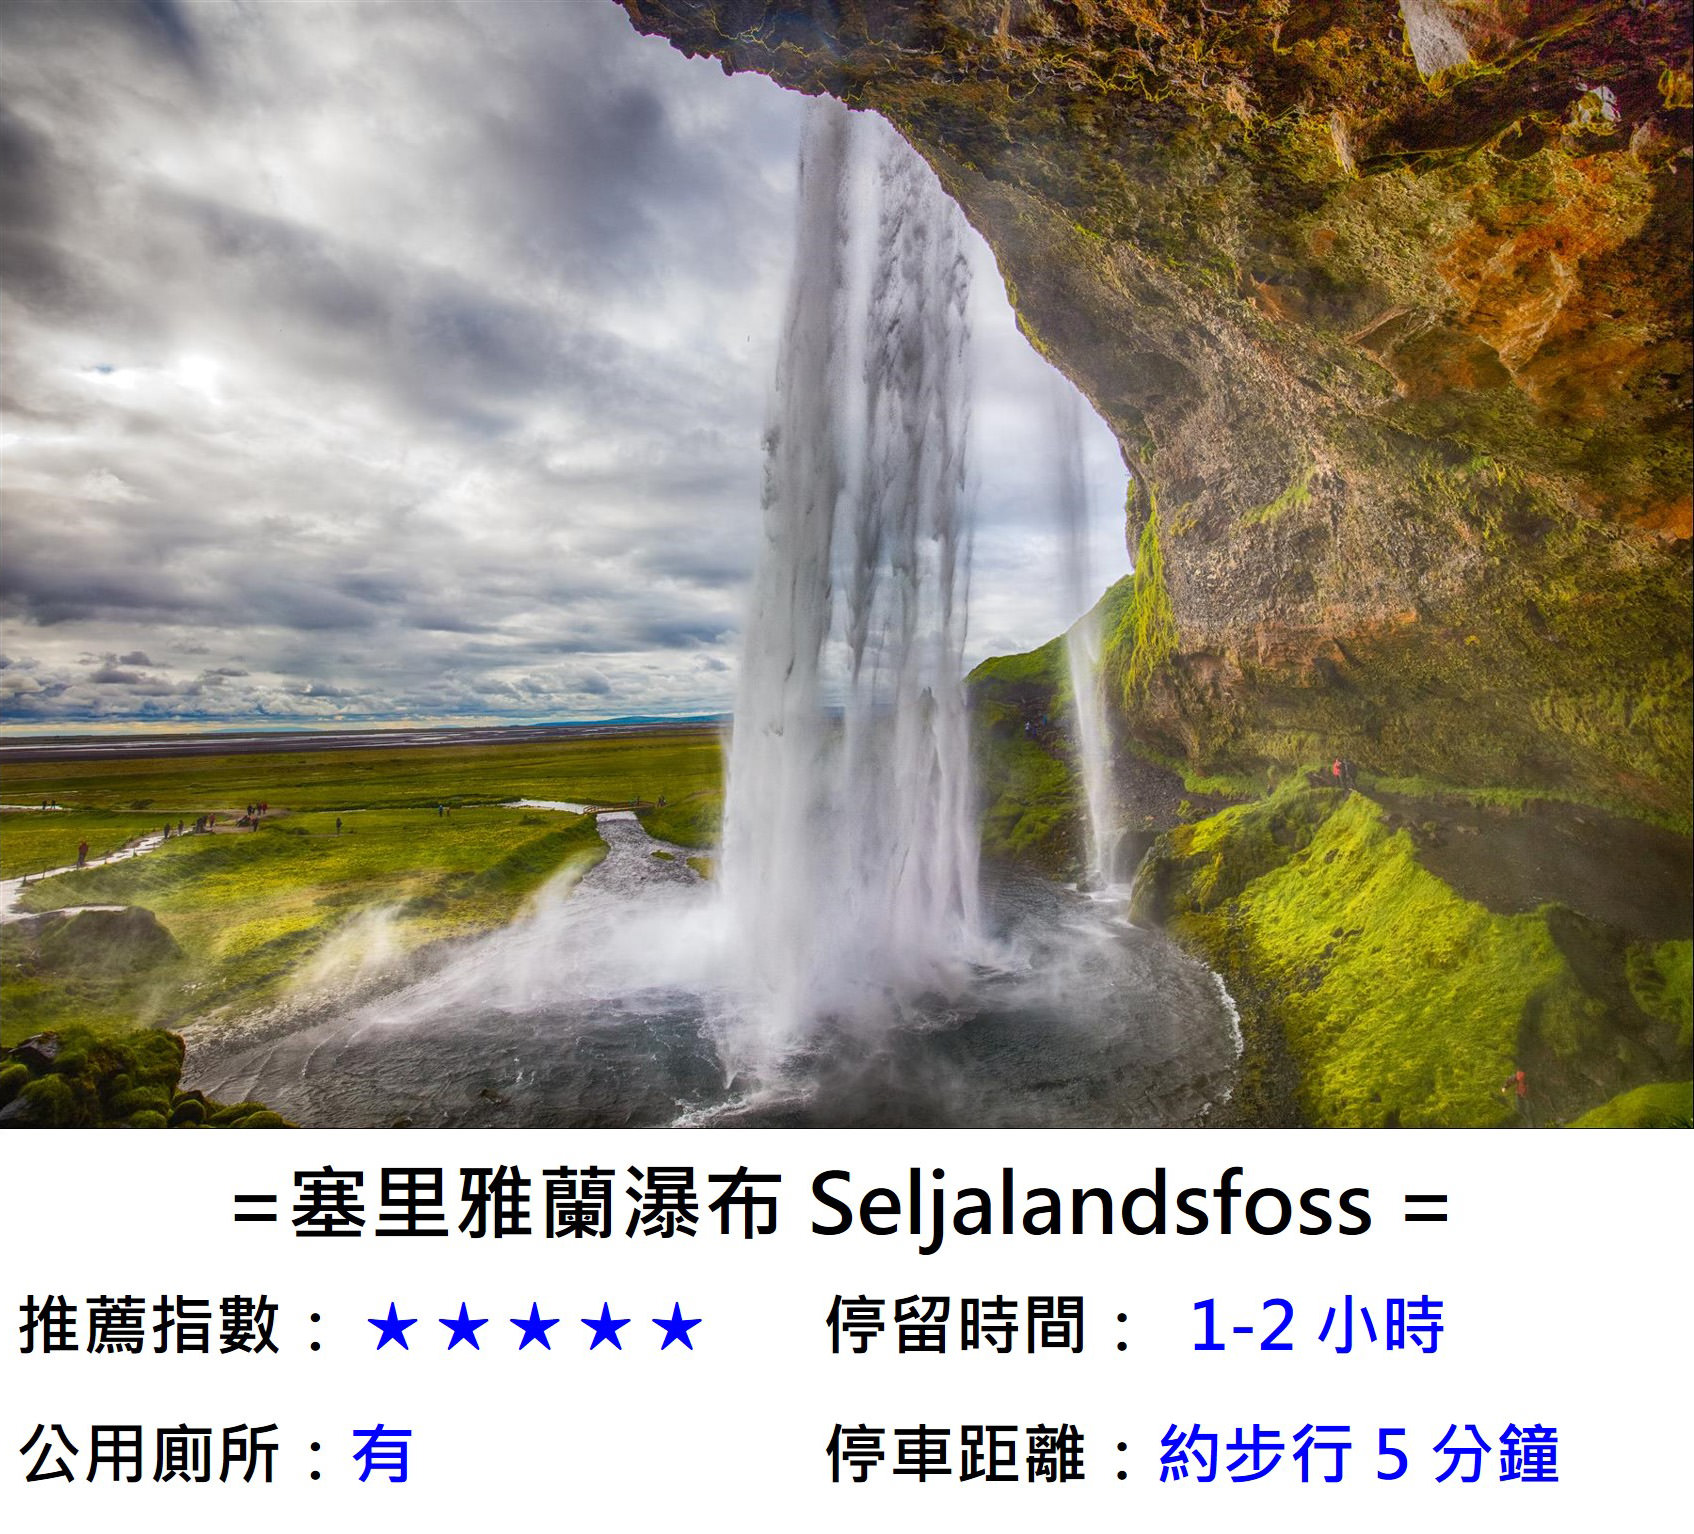 [冰島/規畫] 冰島 4 天 3 夜行程規劃 , 金圈、南部二大瀑布、冰川健行、傑古沙龍冰河湖